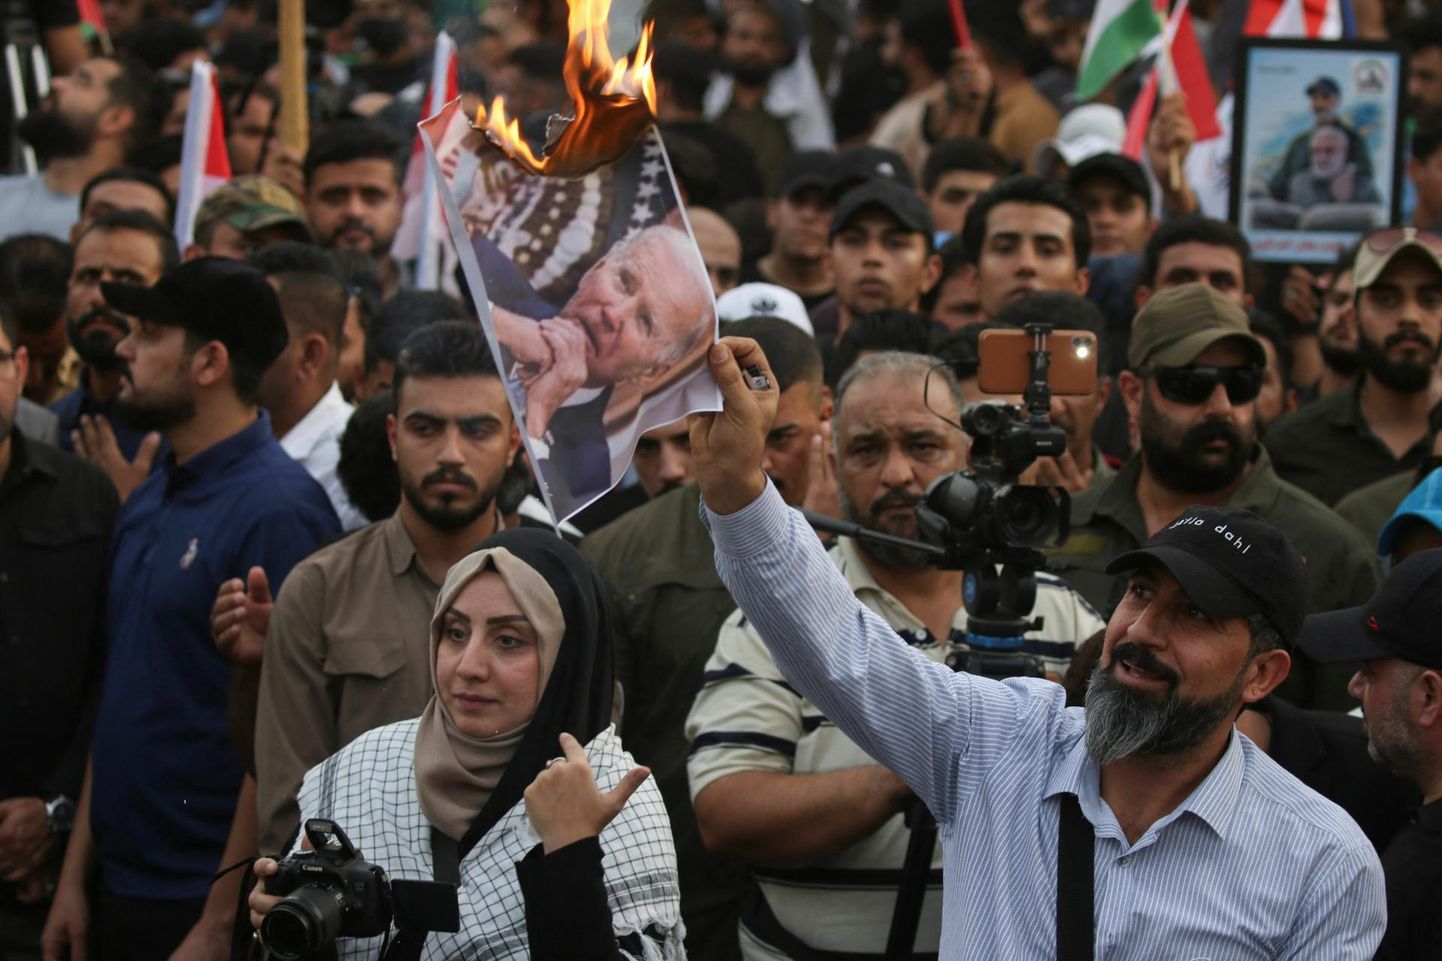 Joe Bideni Ovaalkabineti kõnele reageerisid vihaselt nii Kreml kui Hamasi toetajad, pildil põletavad viimased Iraagis USA presidendi pilti.

 